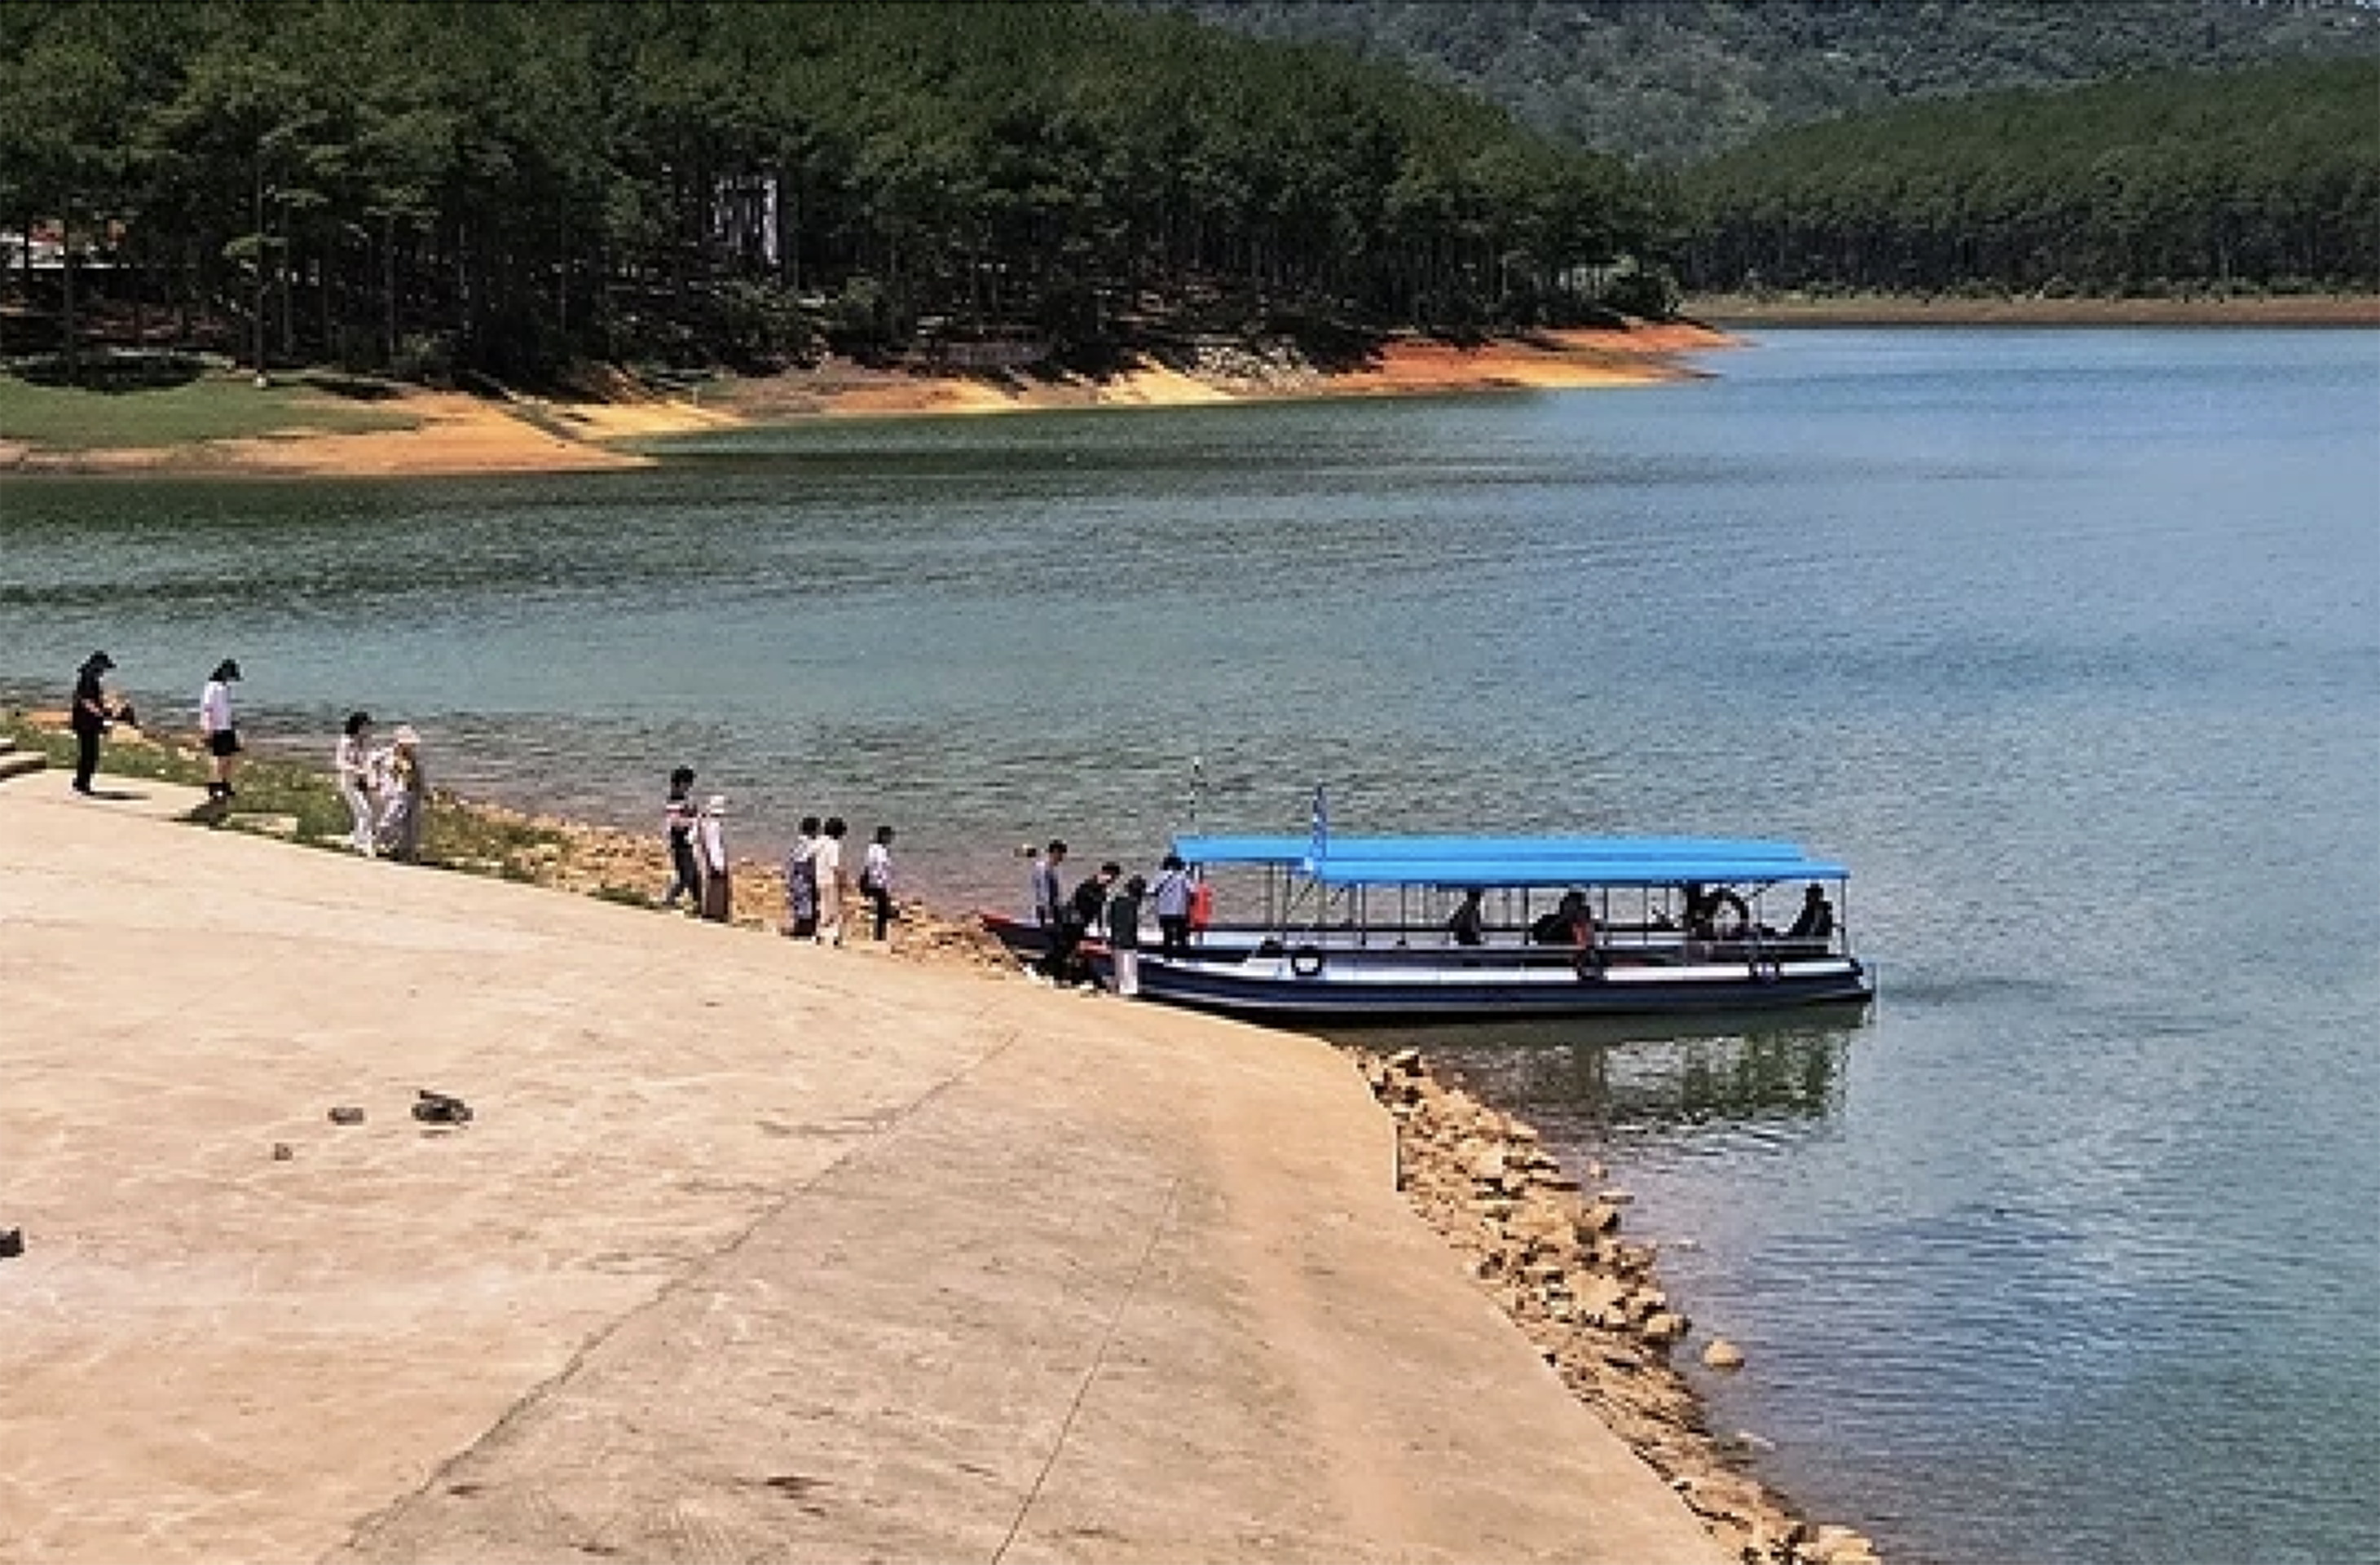 Dân sinh - Bất chấp chỉ đạo của UBND tỉnh Lâm Đồng, du thuyền vẫn hoạt động trên hồ Tuyền Lâm (Hình 4).